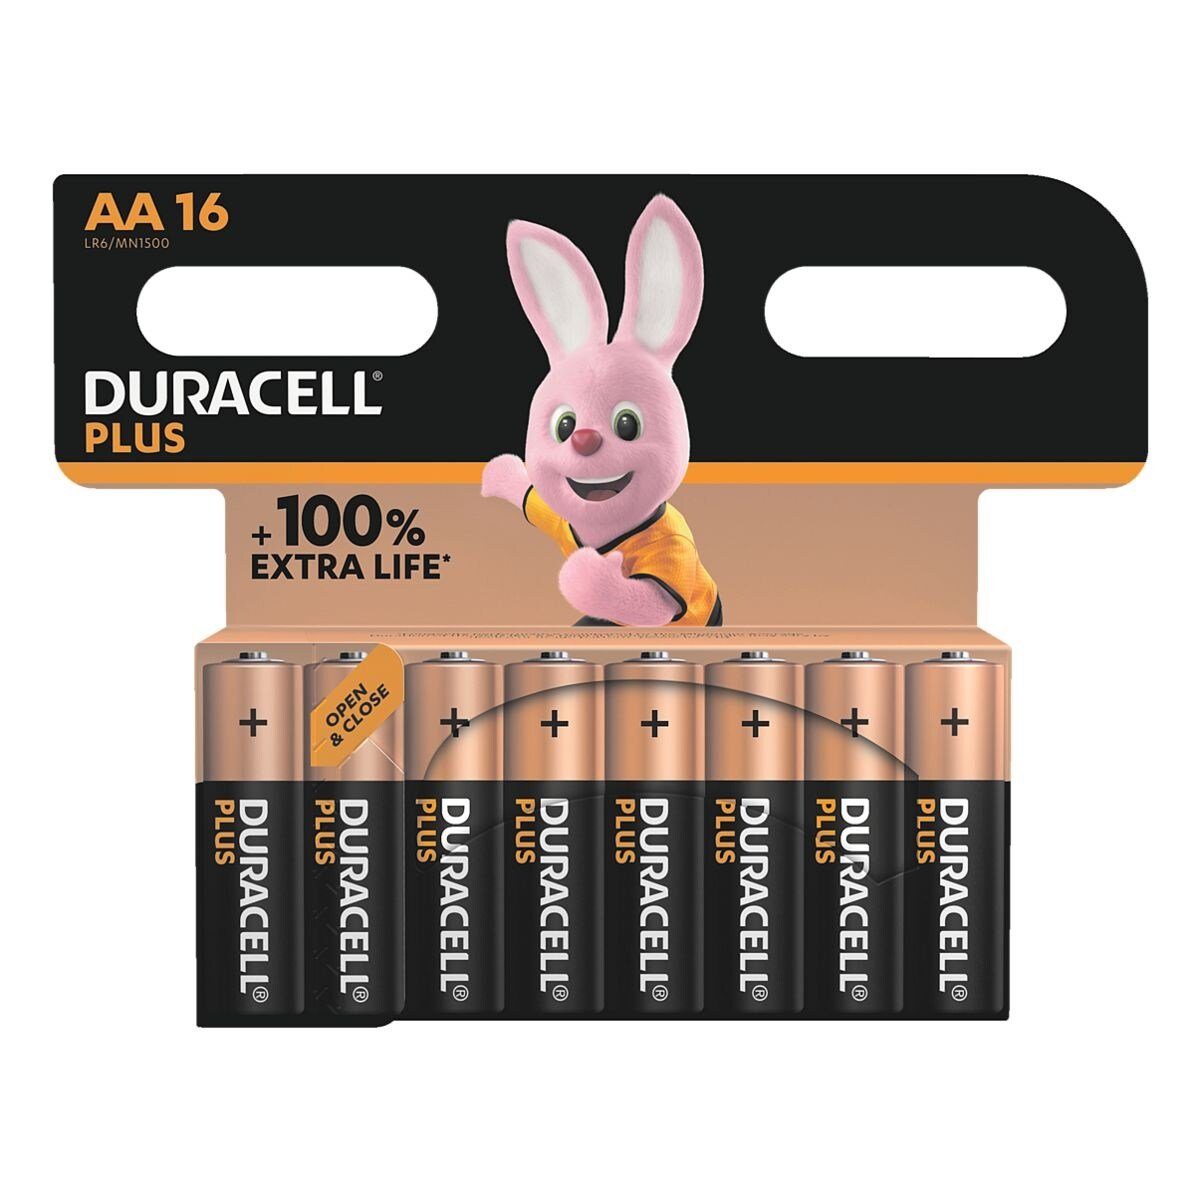 Duracell Plus Batterie, (1.5 V, 16 St), Mignon / AA / LR06 / LR6, 1,5 V, Alkali